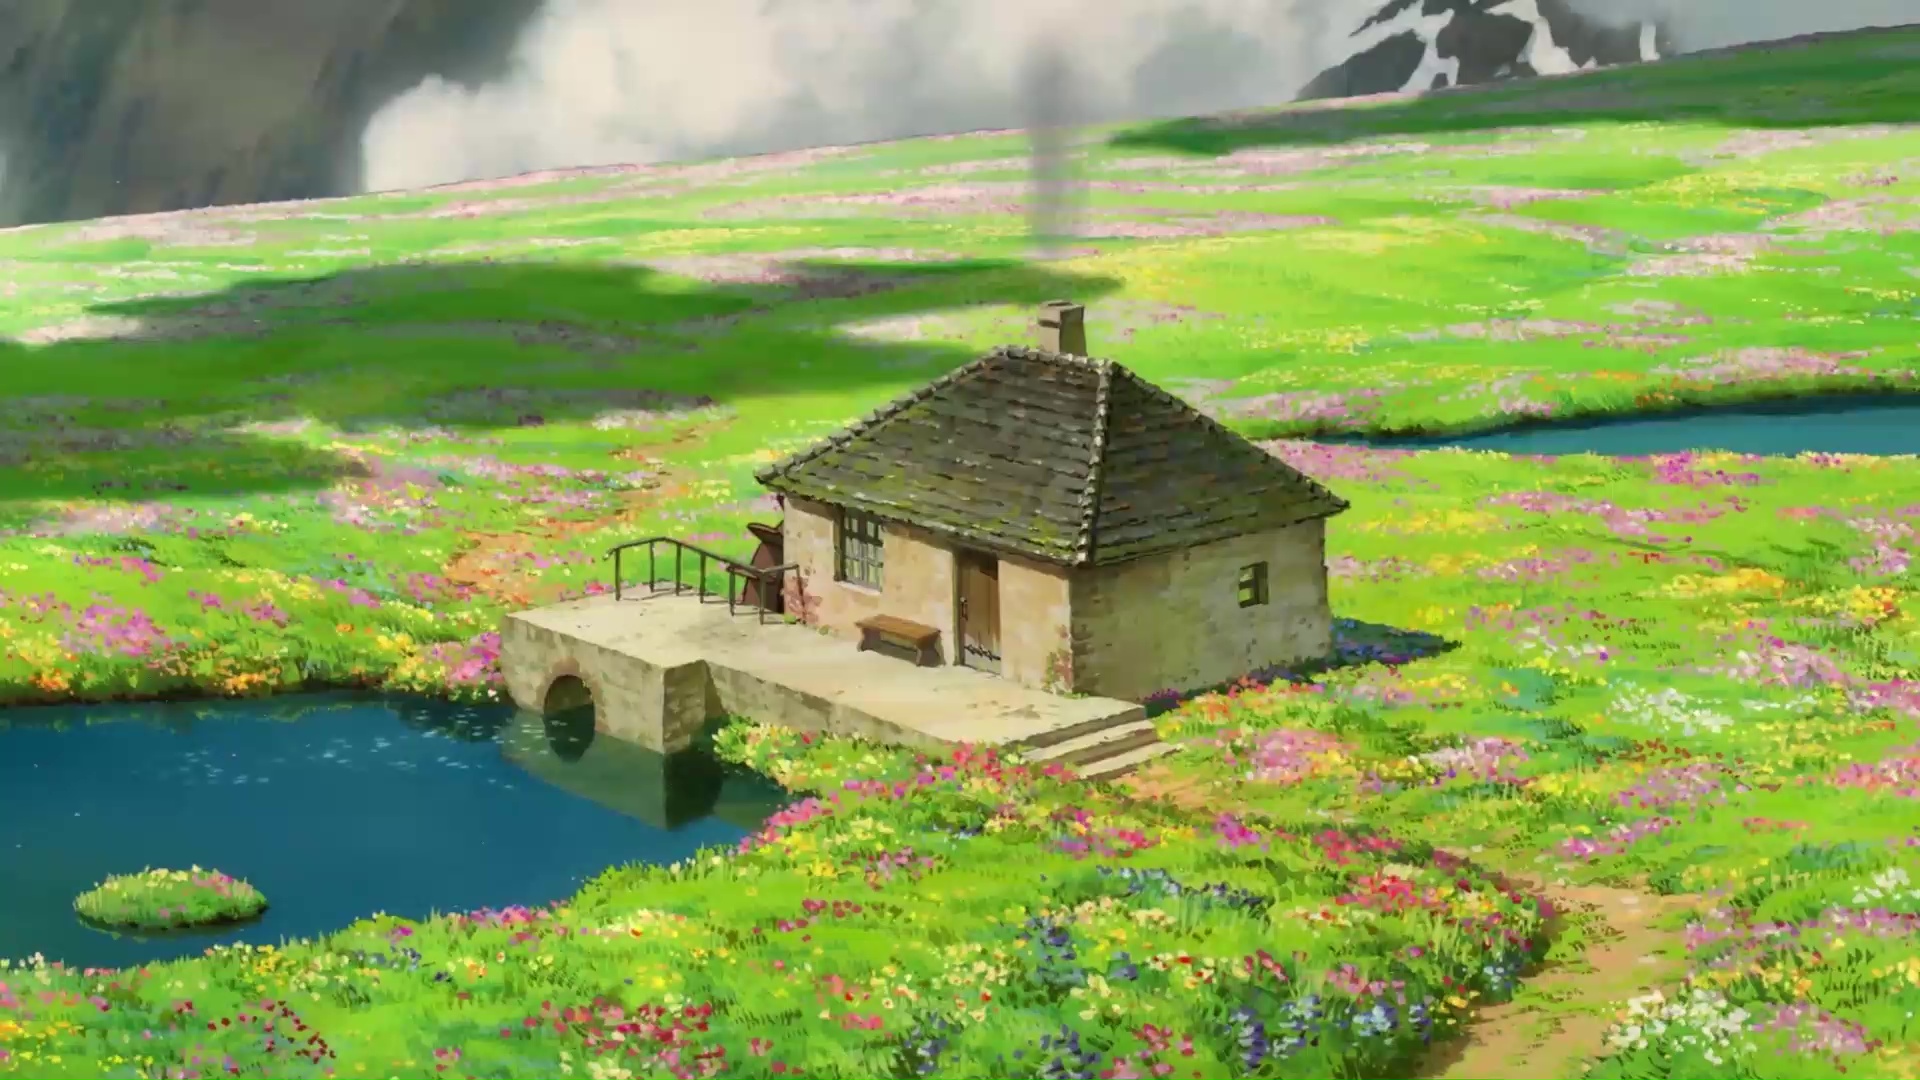 Hình nền động Howl\'s Moving Castle Live Wallpaper đầy màu sắc và sinh động sẽ khiến bạn cảm thấy như mình đang chạm tay vào thế giới phép thuật của Studio Ghibli.